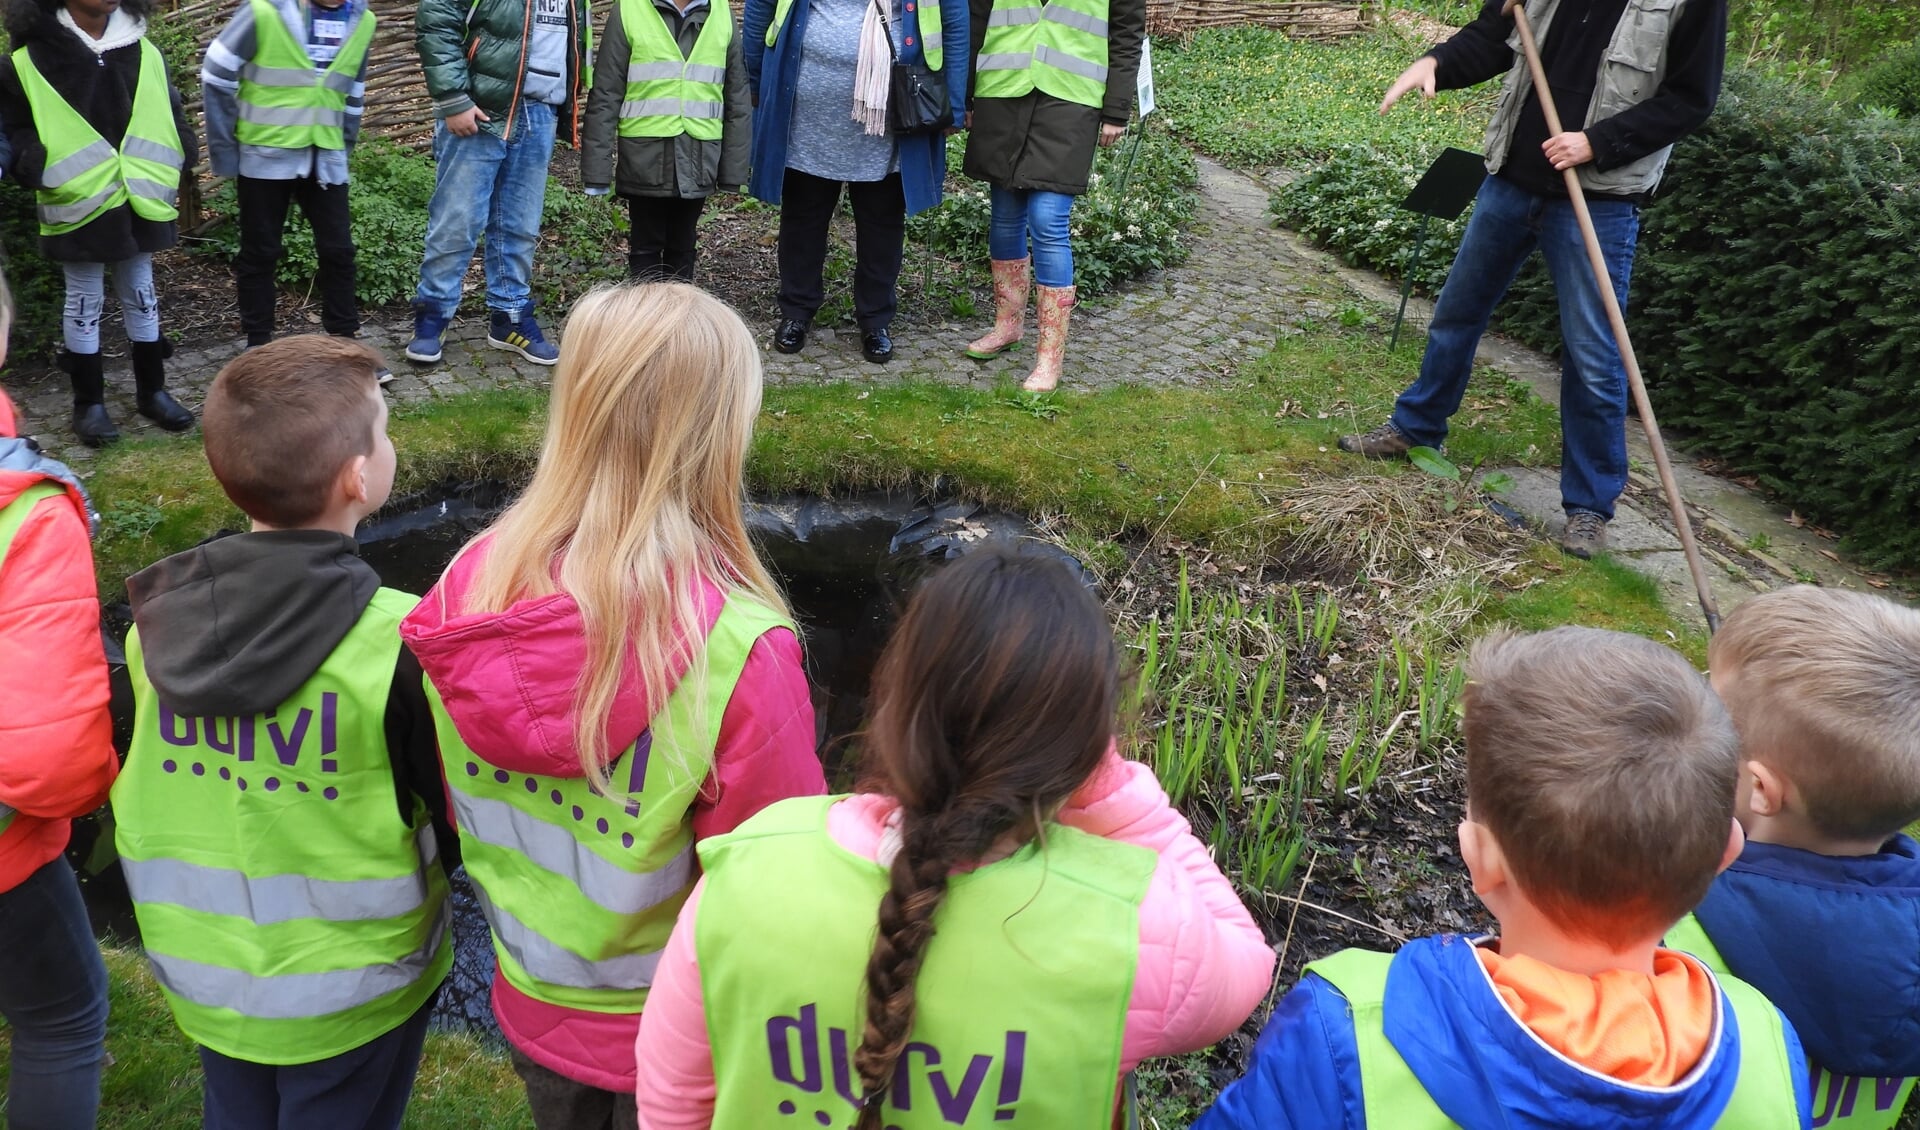 Groep 5 van DURV! school Tochtwaard krijgt een rondleiding door de wijktuin aan de Rekerdijk